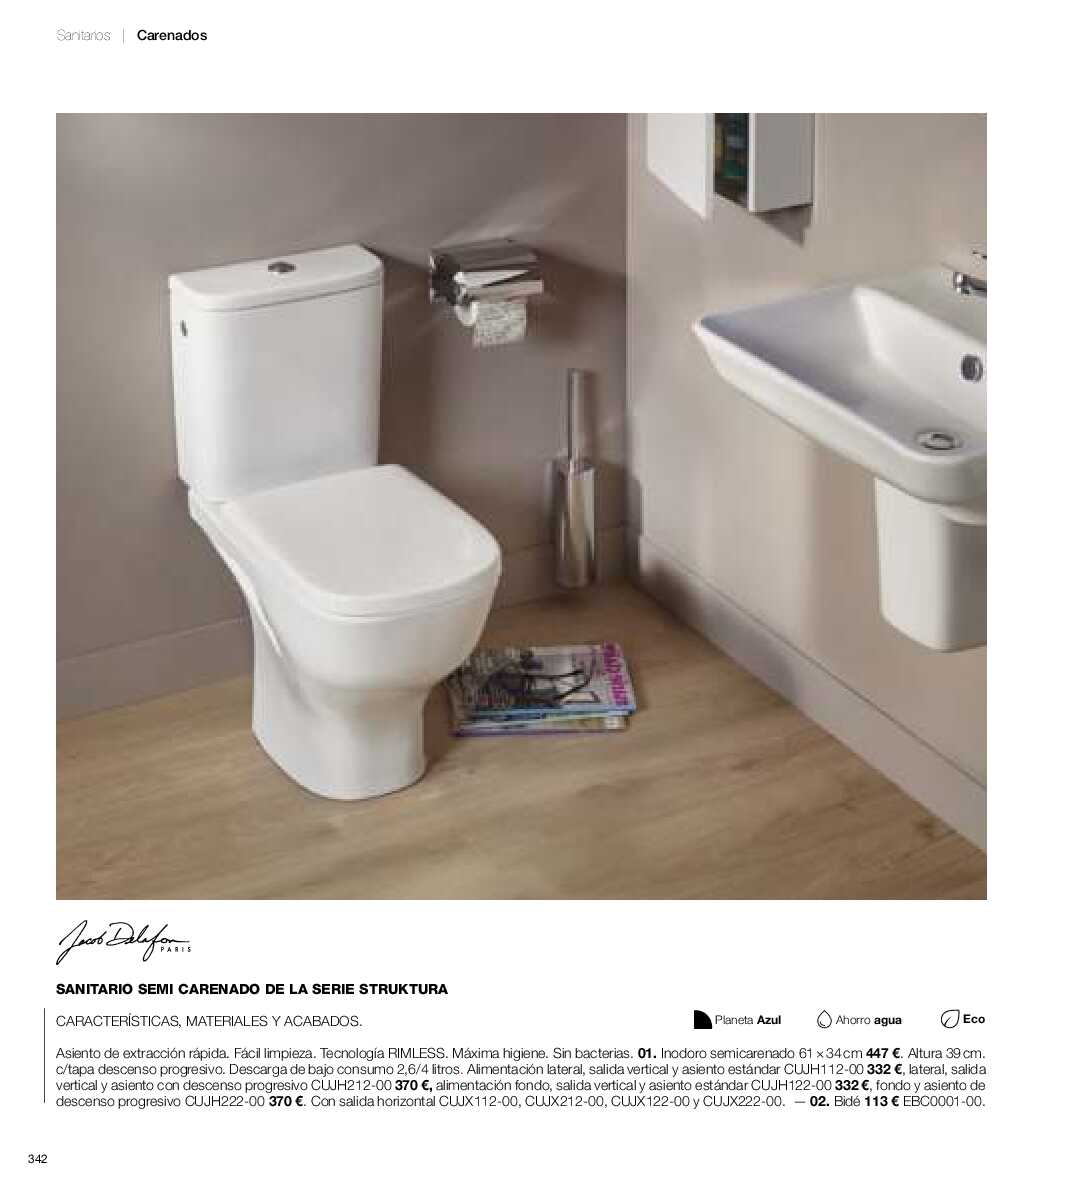 Catálogo de baños Gamma. Página 341